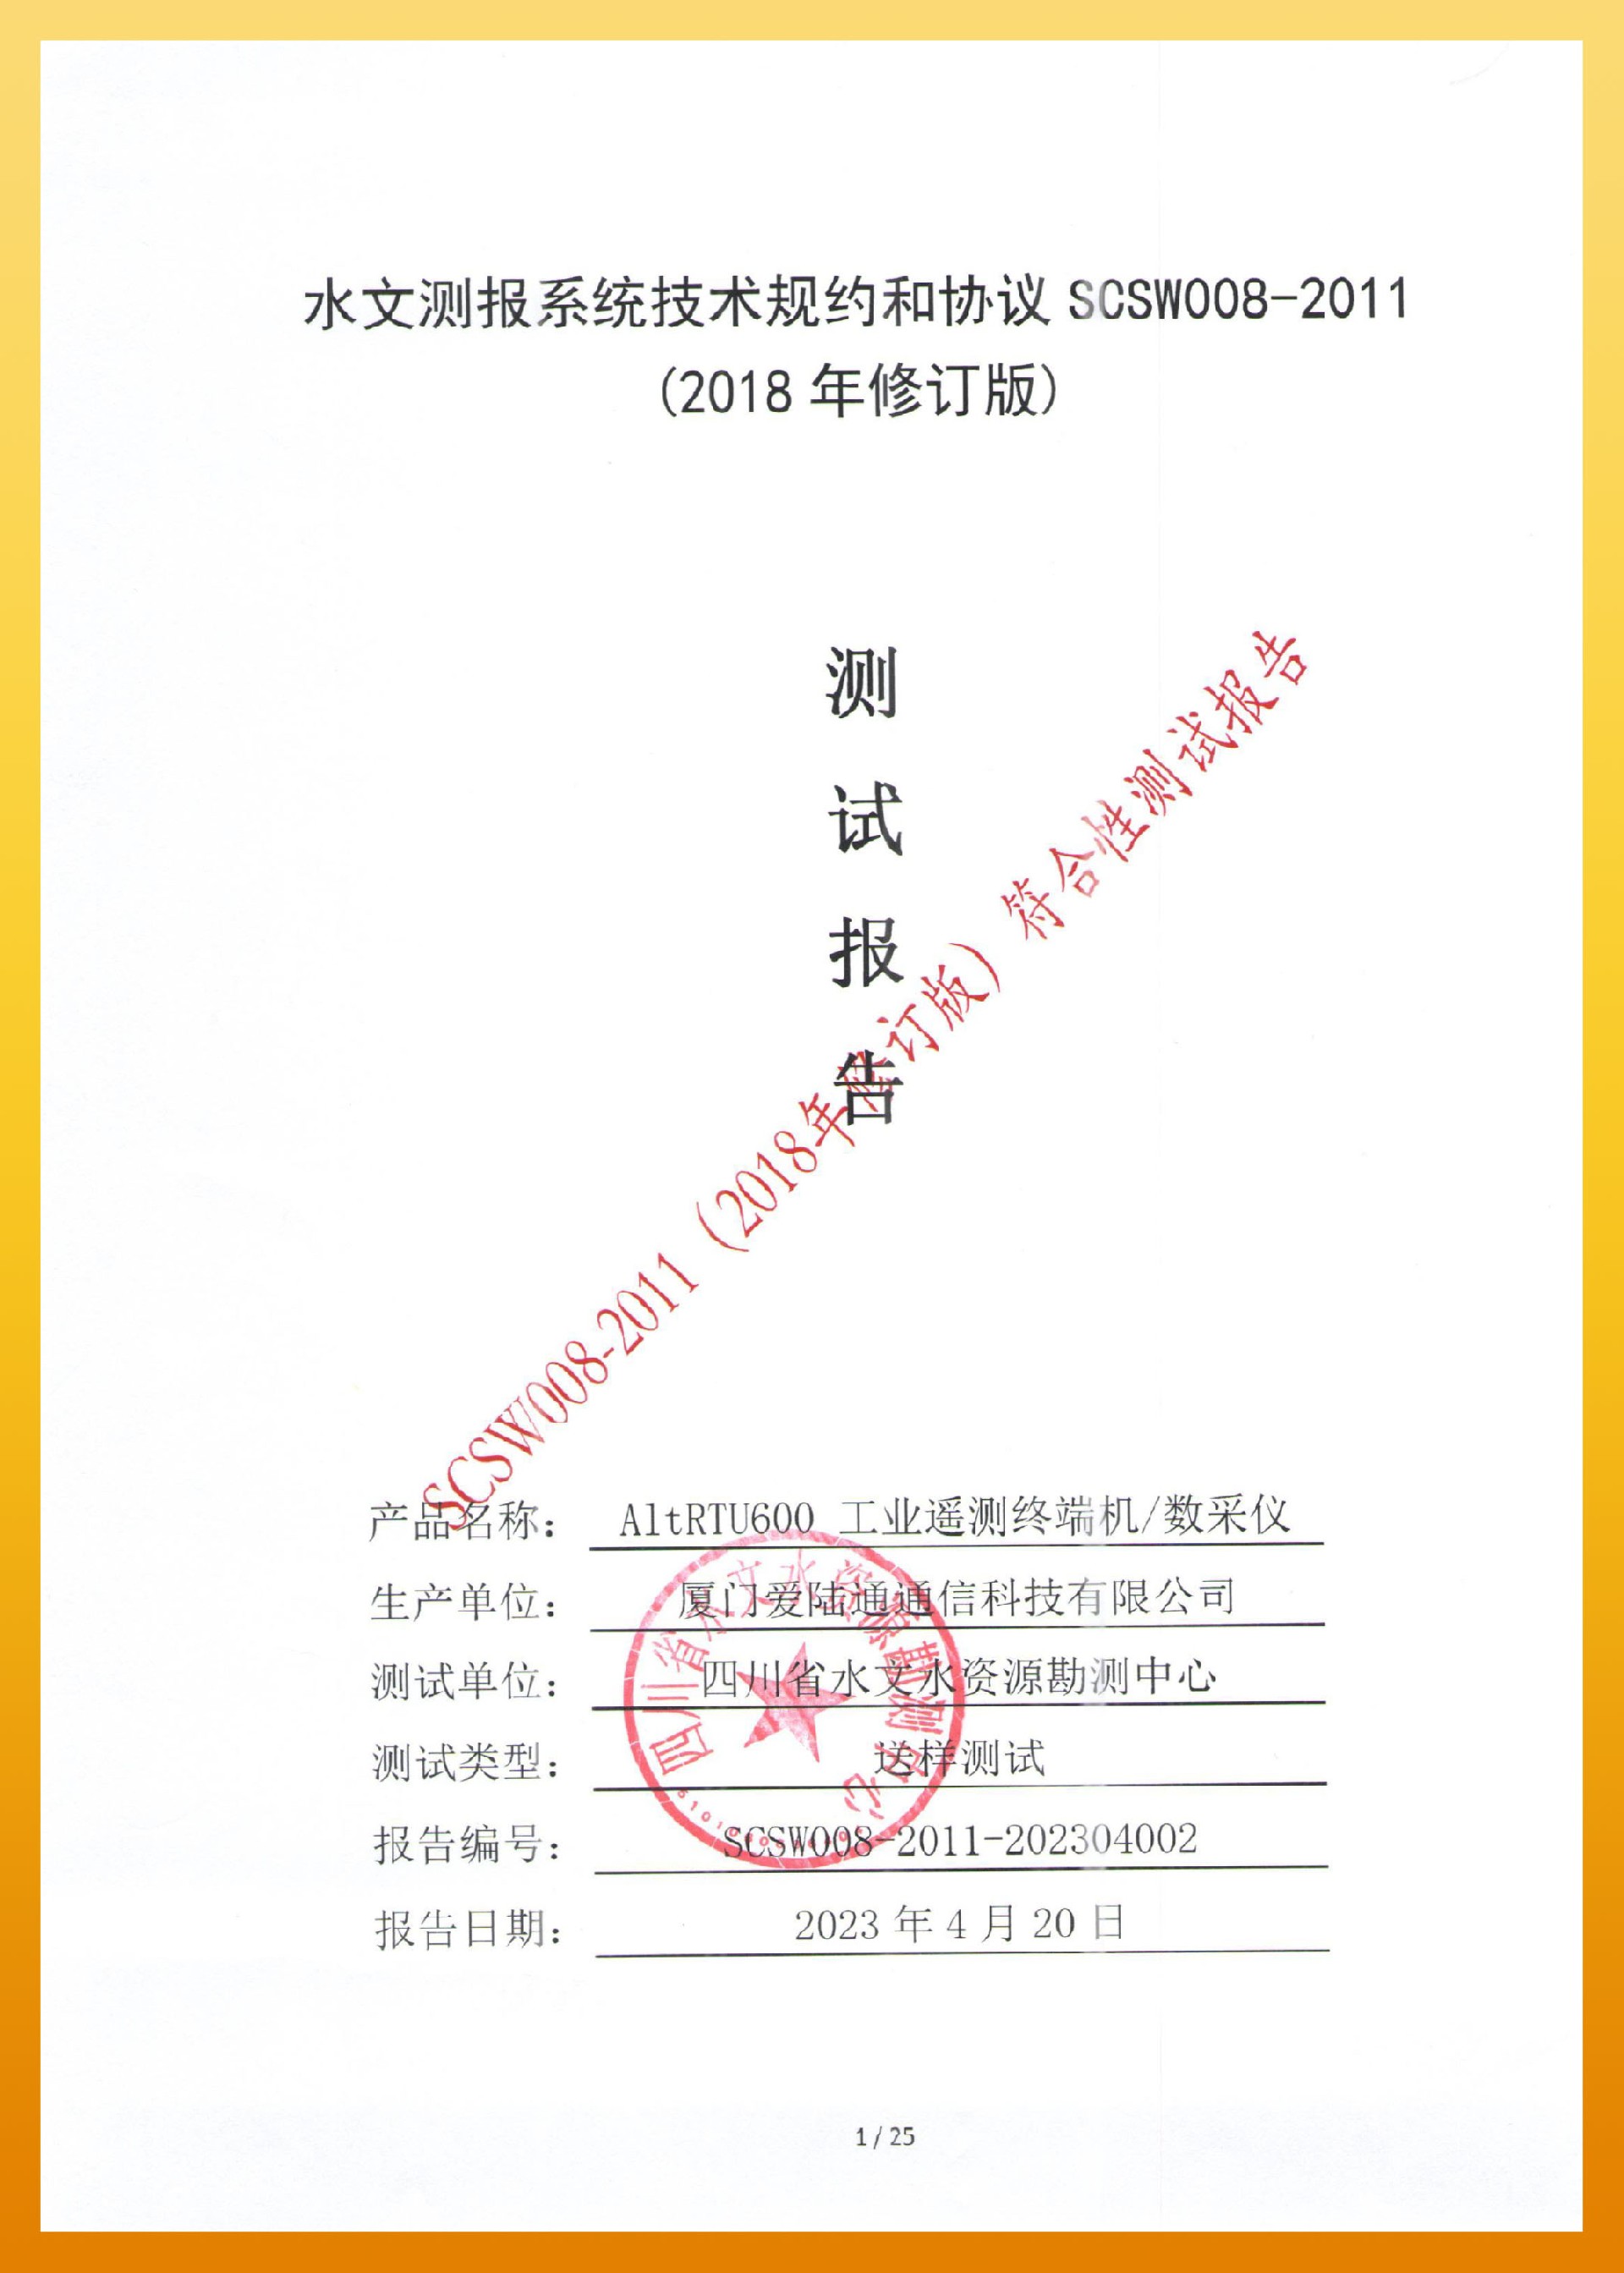 爱陆通-四川水文测报系统技术规约和协议 SCSW008-2011-1.jpg